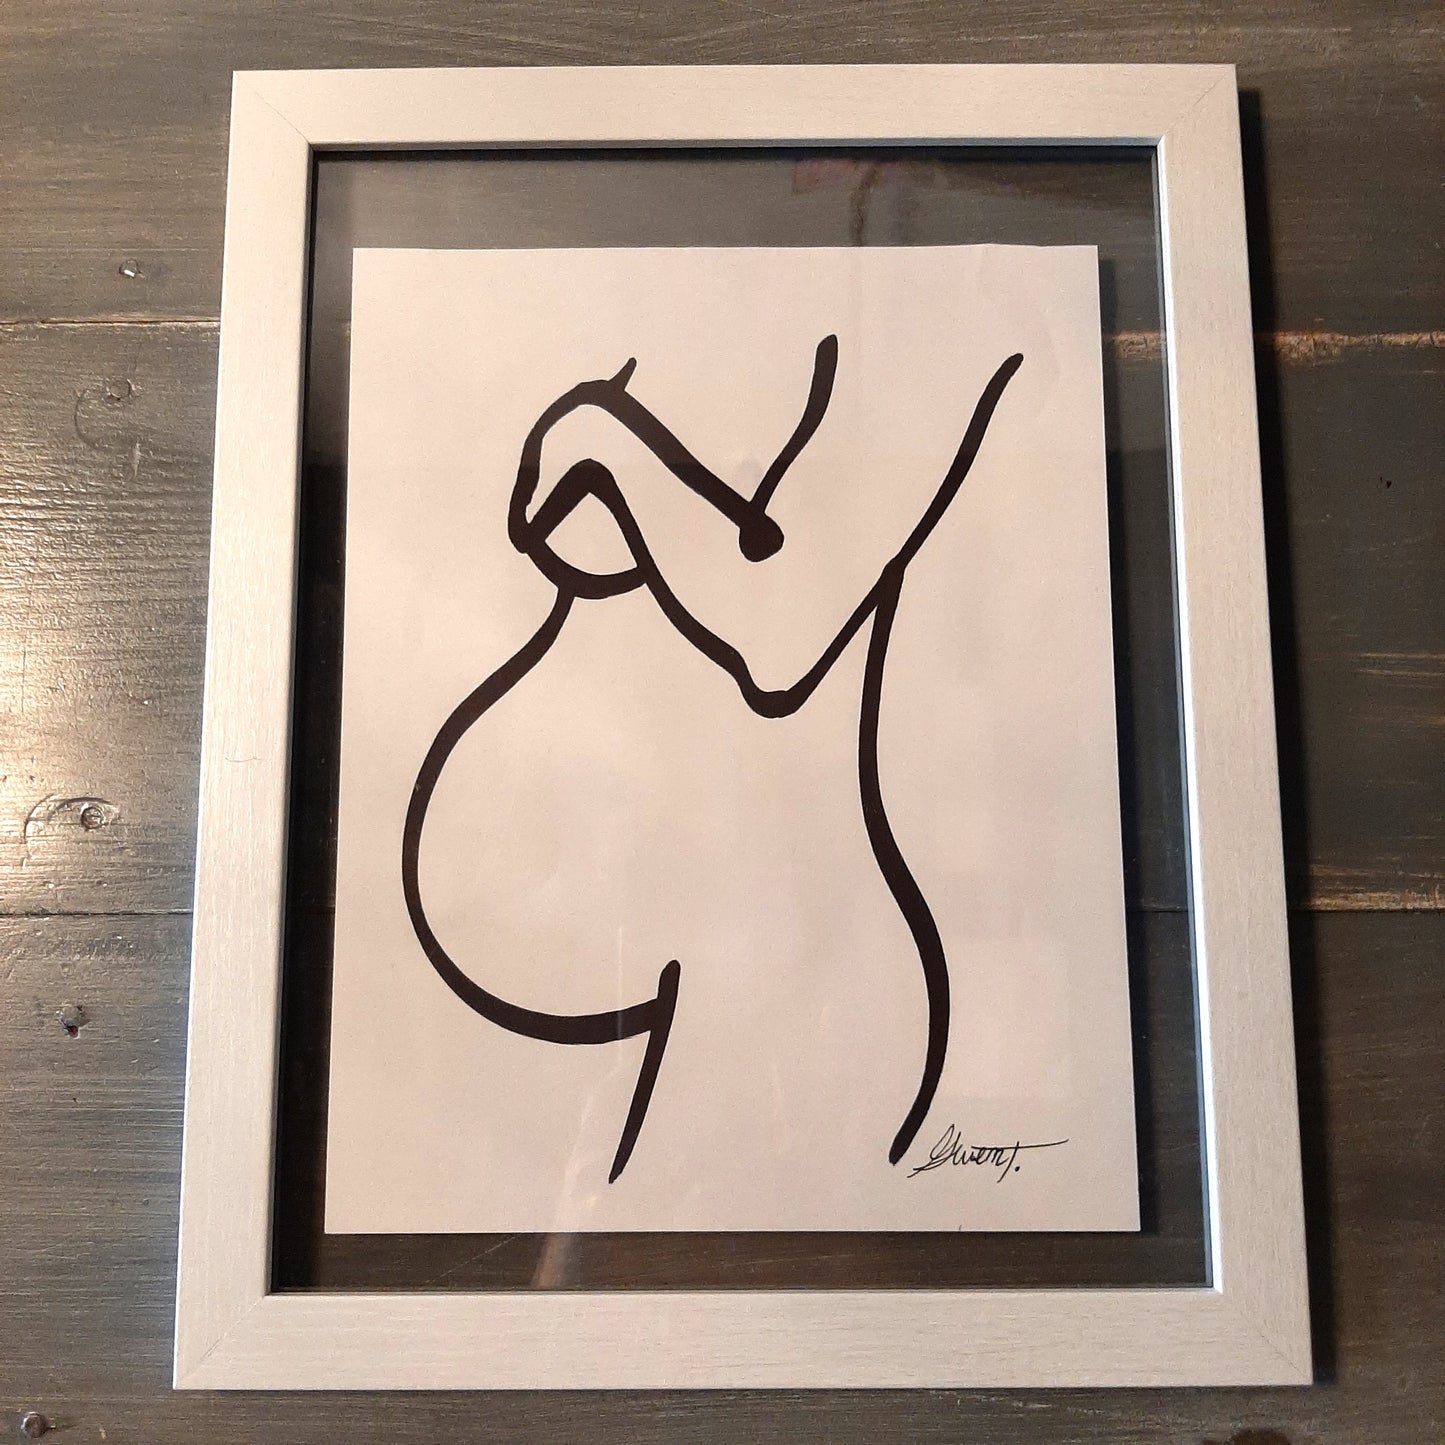 Framed line art maternity drawings, Asst'd